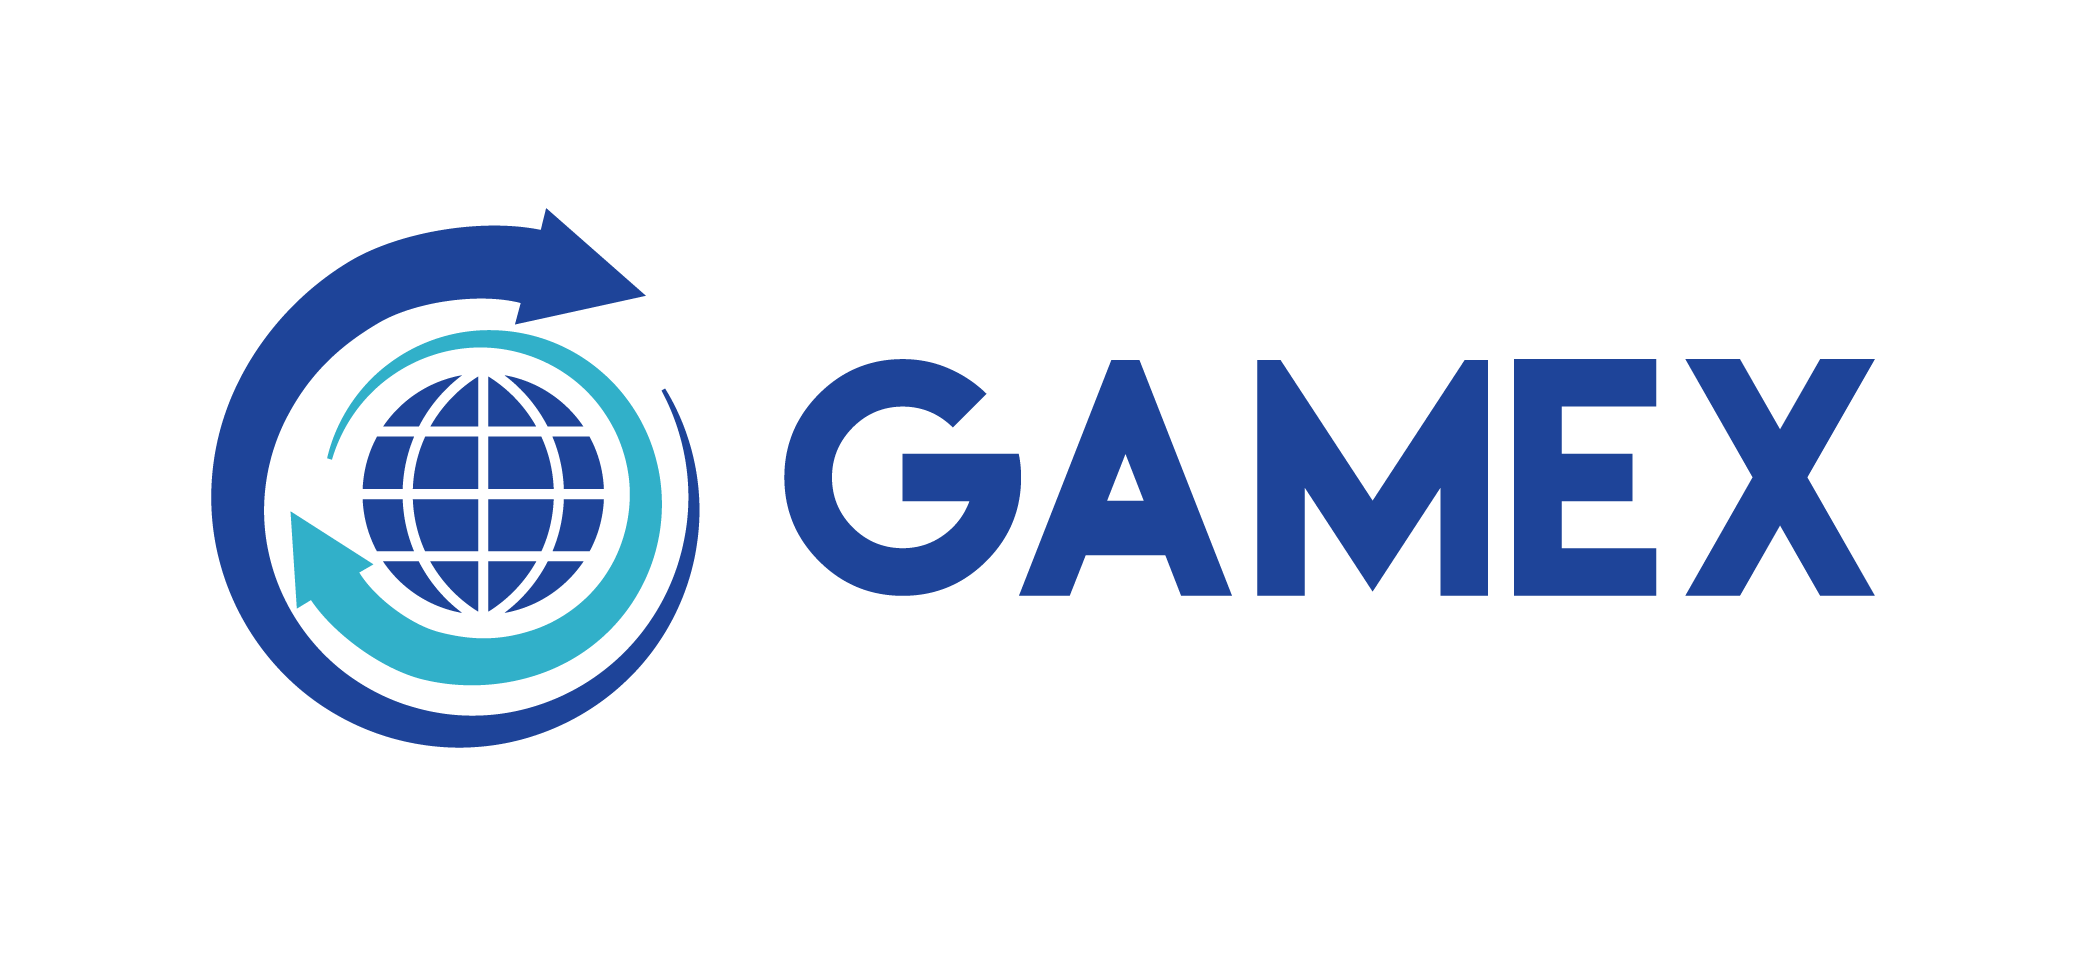 Gamex Logo - Gamex logo 1 » logodesignfx